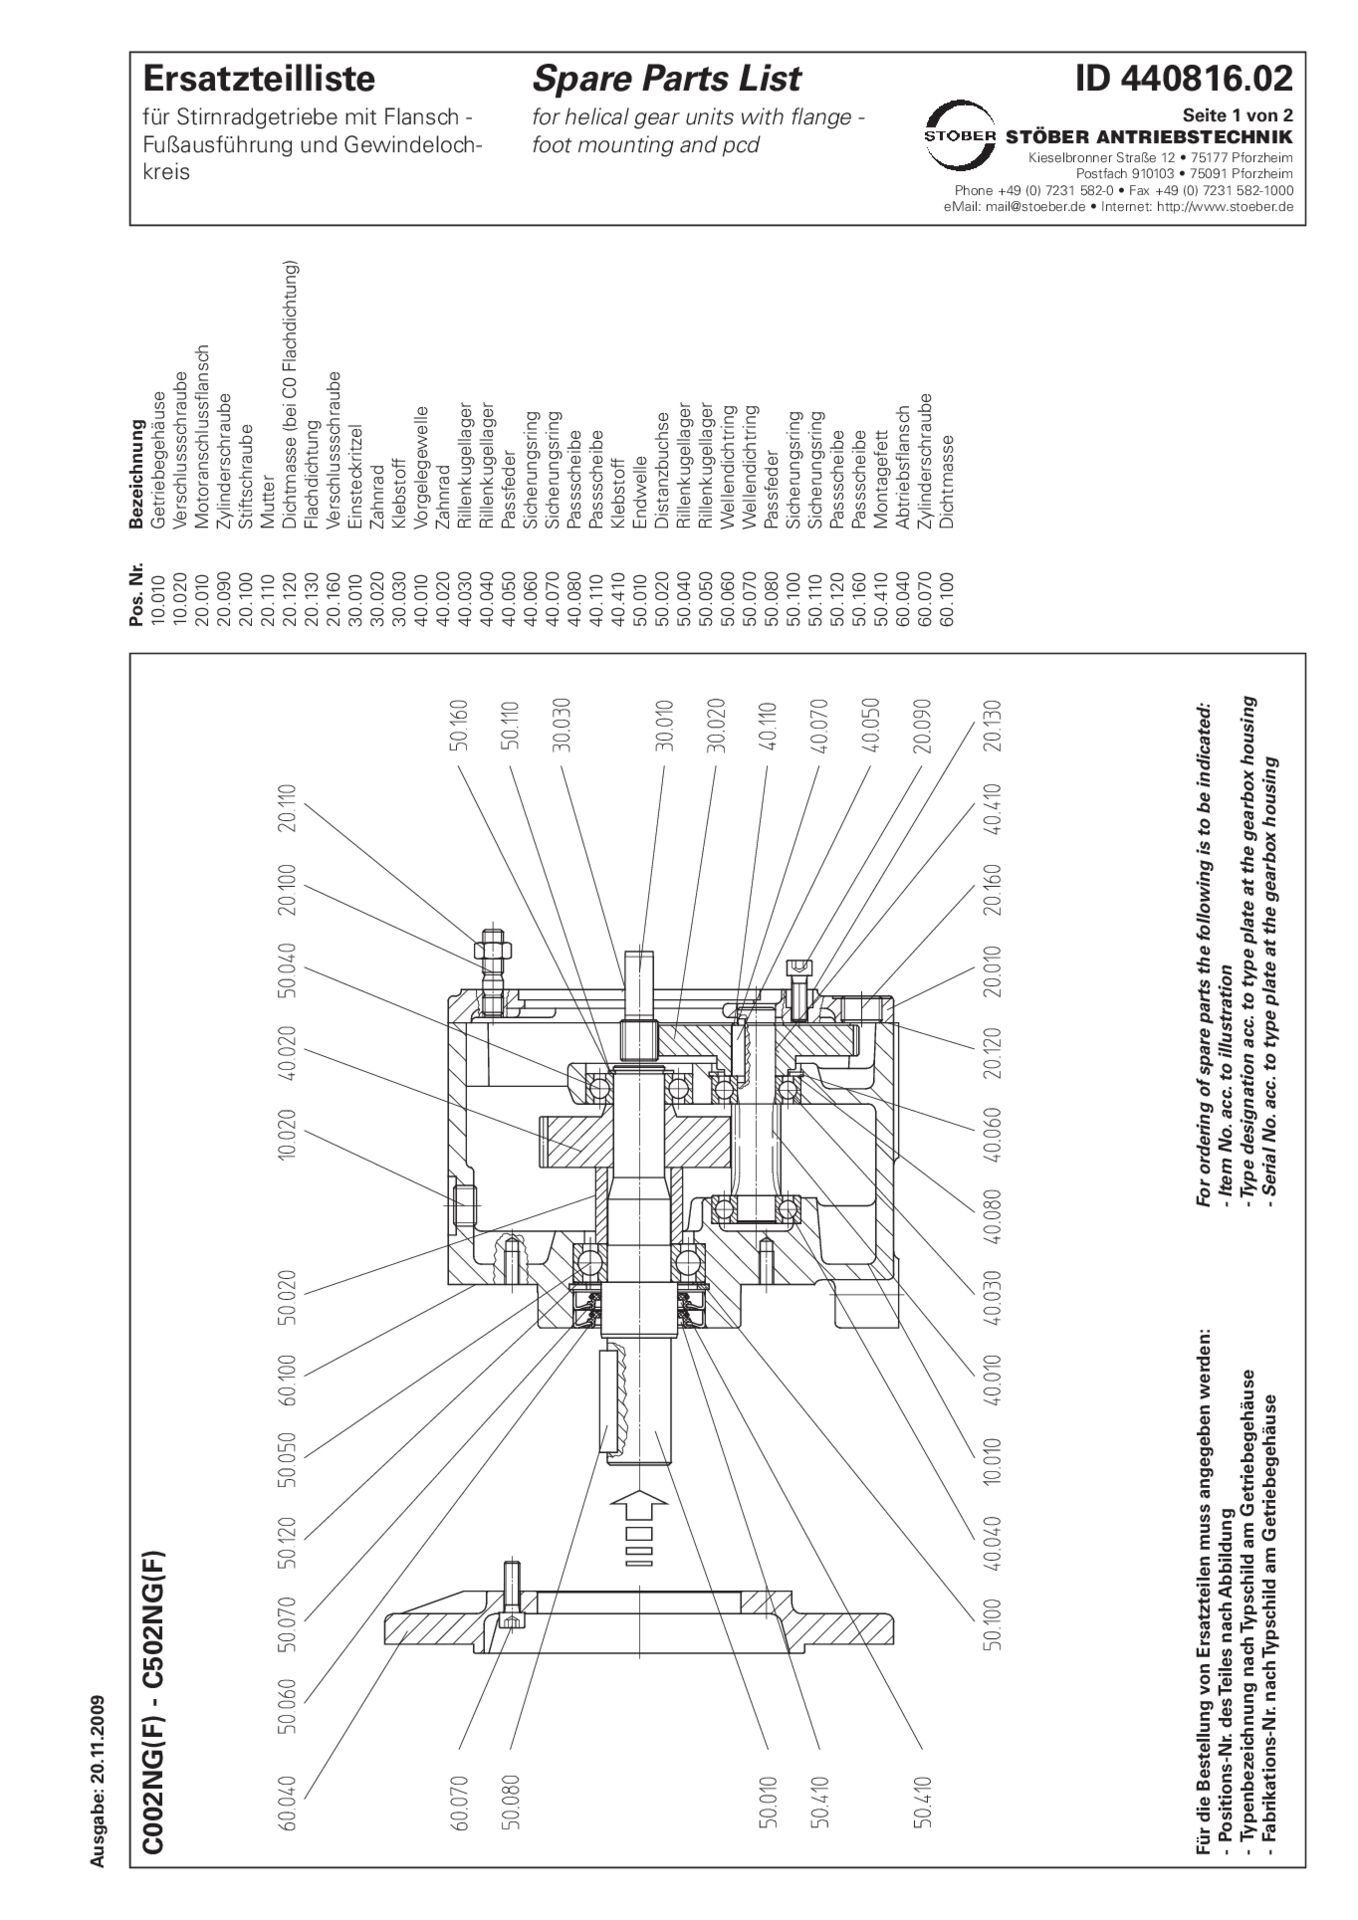 Replacement parts list helical gear units C002 C102 C202 C302 C402 C502 NG NFErsatzteilliste Stirnradgetriebe C002 C102 C202 C302 C402 C502 NG NF